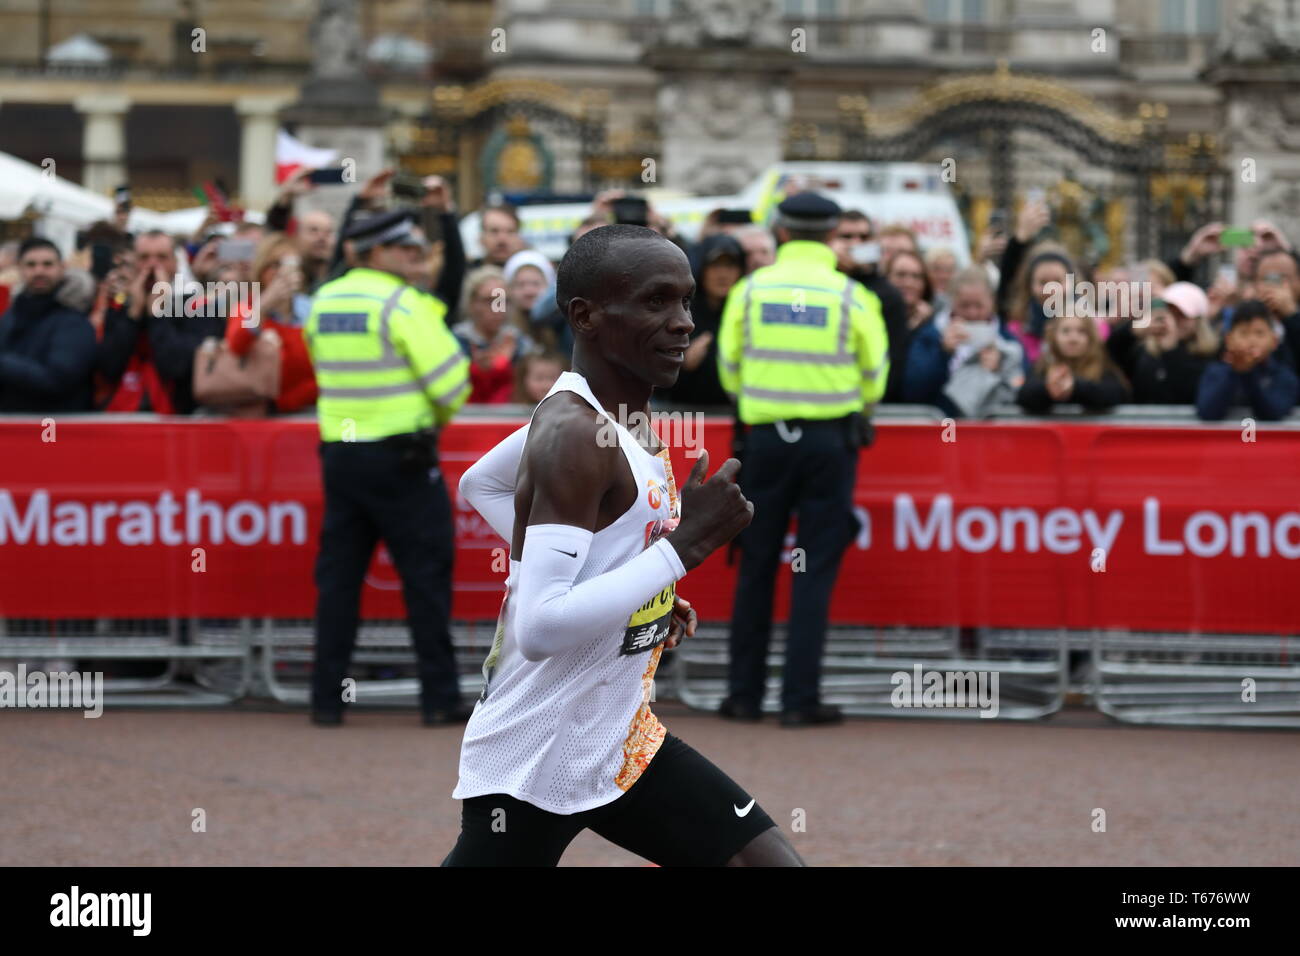 La Vierge, le Marathon de Londres 2019 men's winner Eliud Kipchoge du Kenya, dans la phase finale devant le palais de Buckingham. Banque D'Images